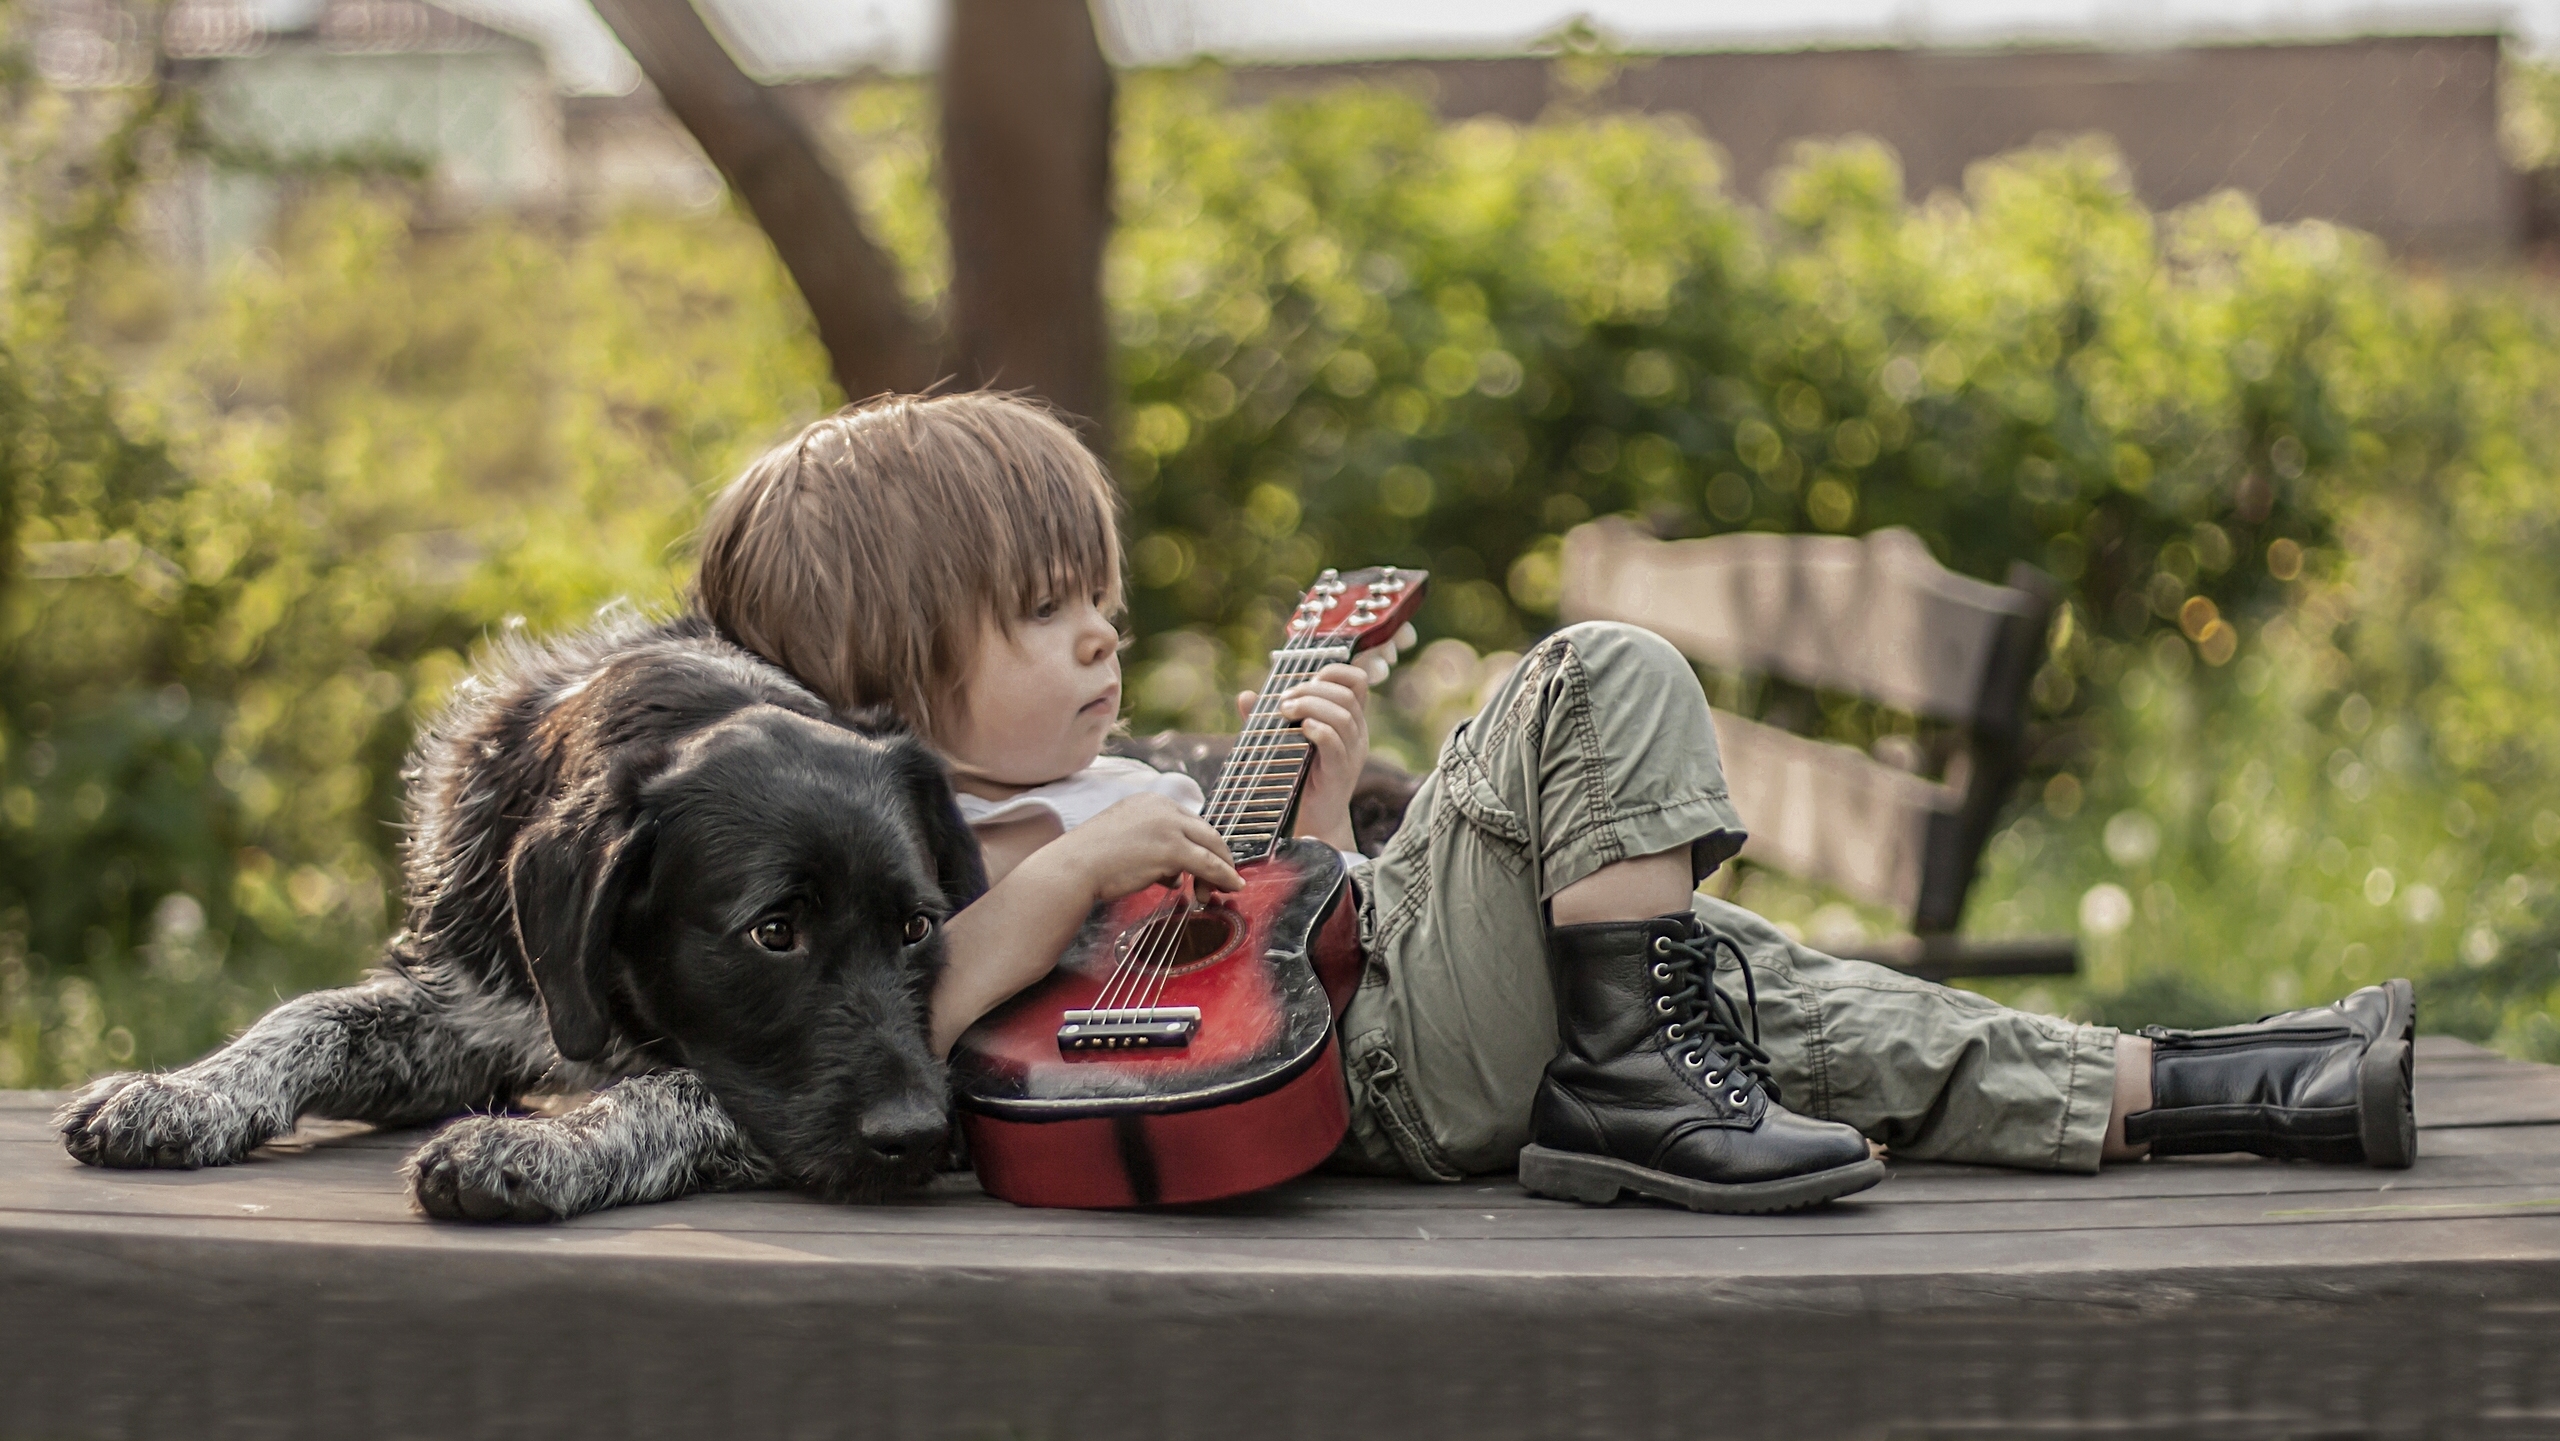 A Little Boy and His Dog by Agnieszka Gulczyńska